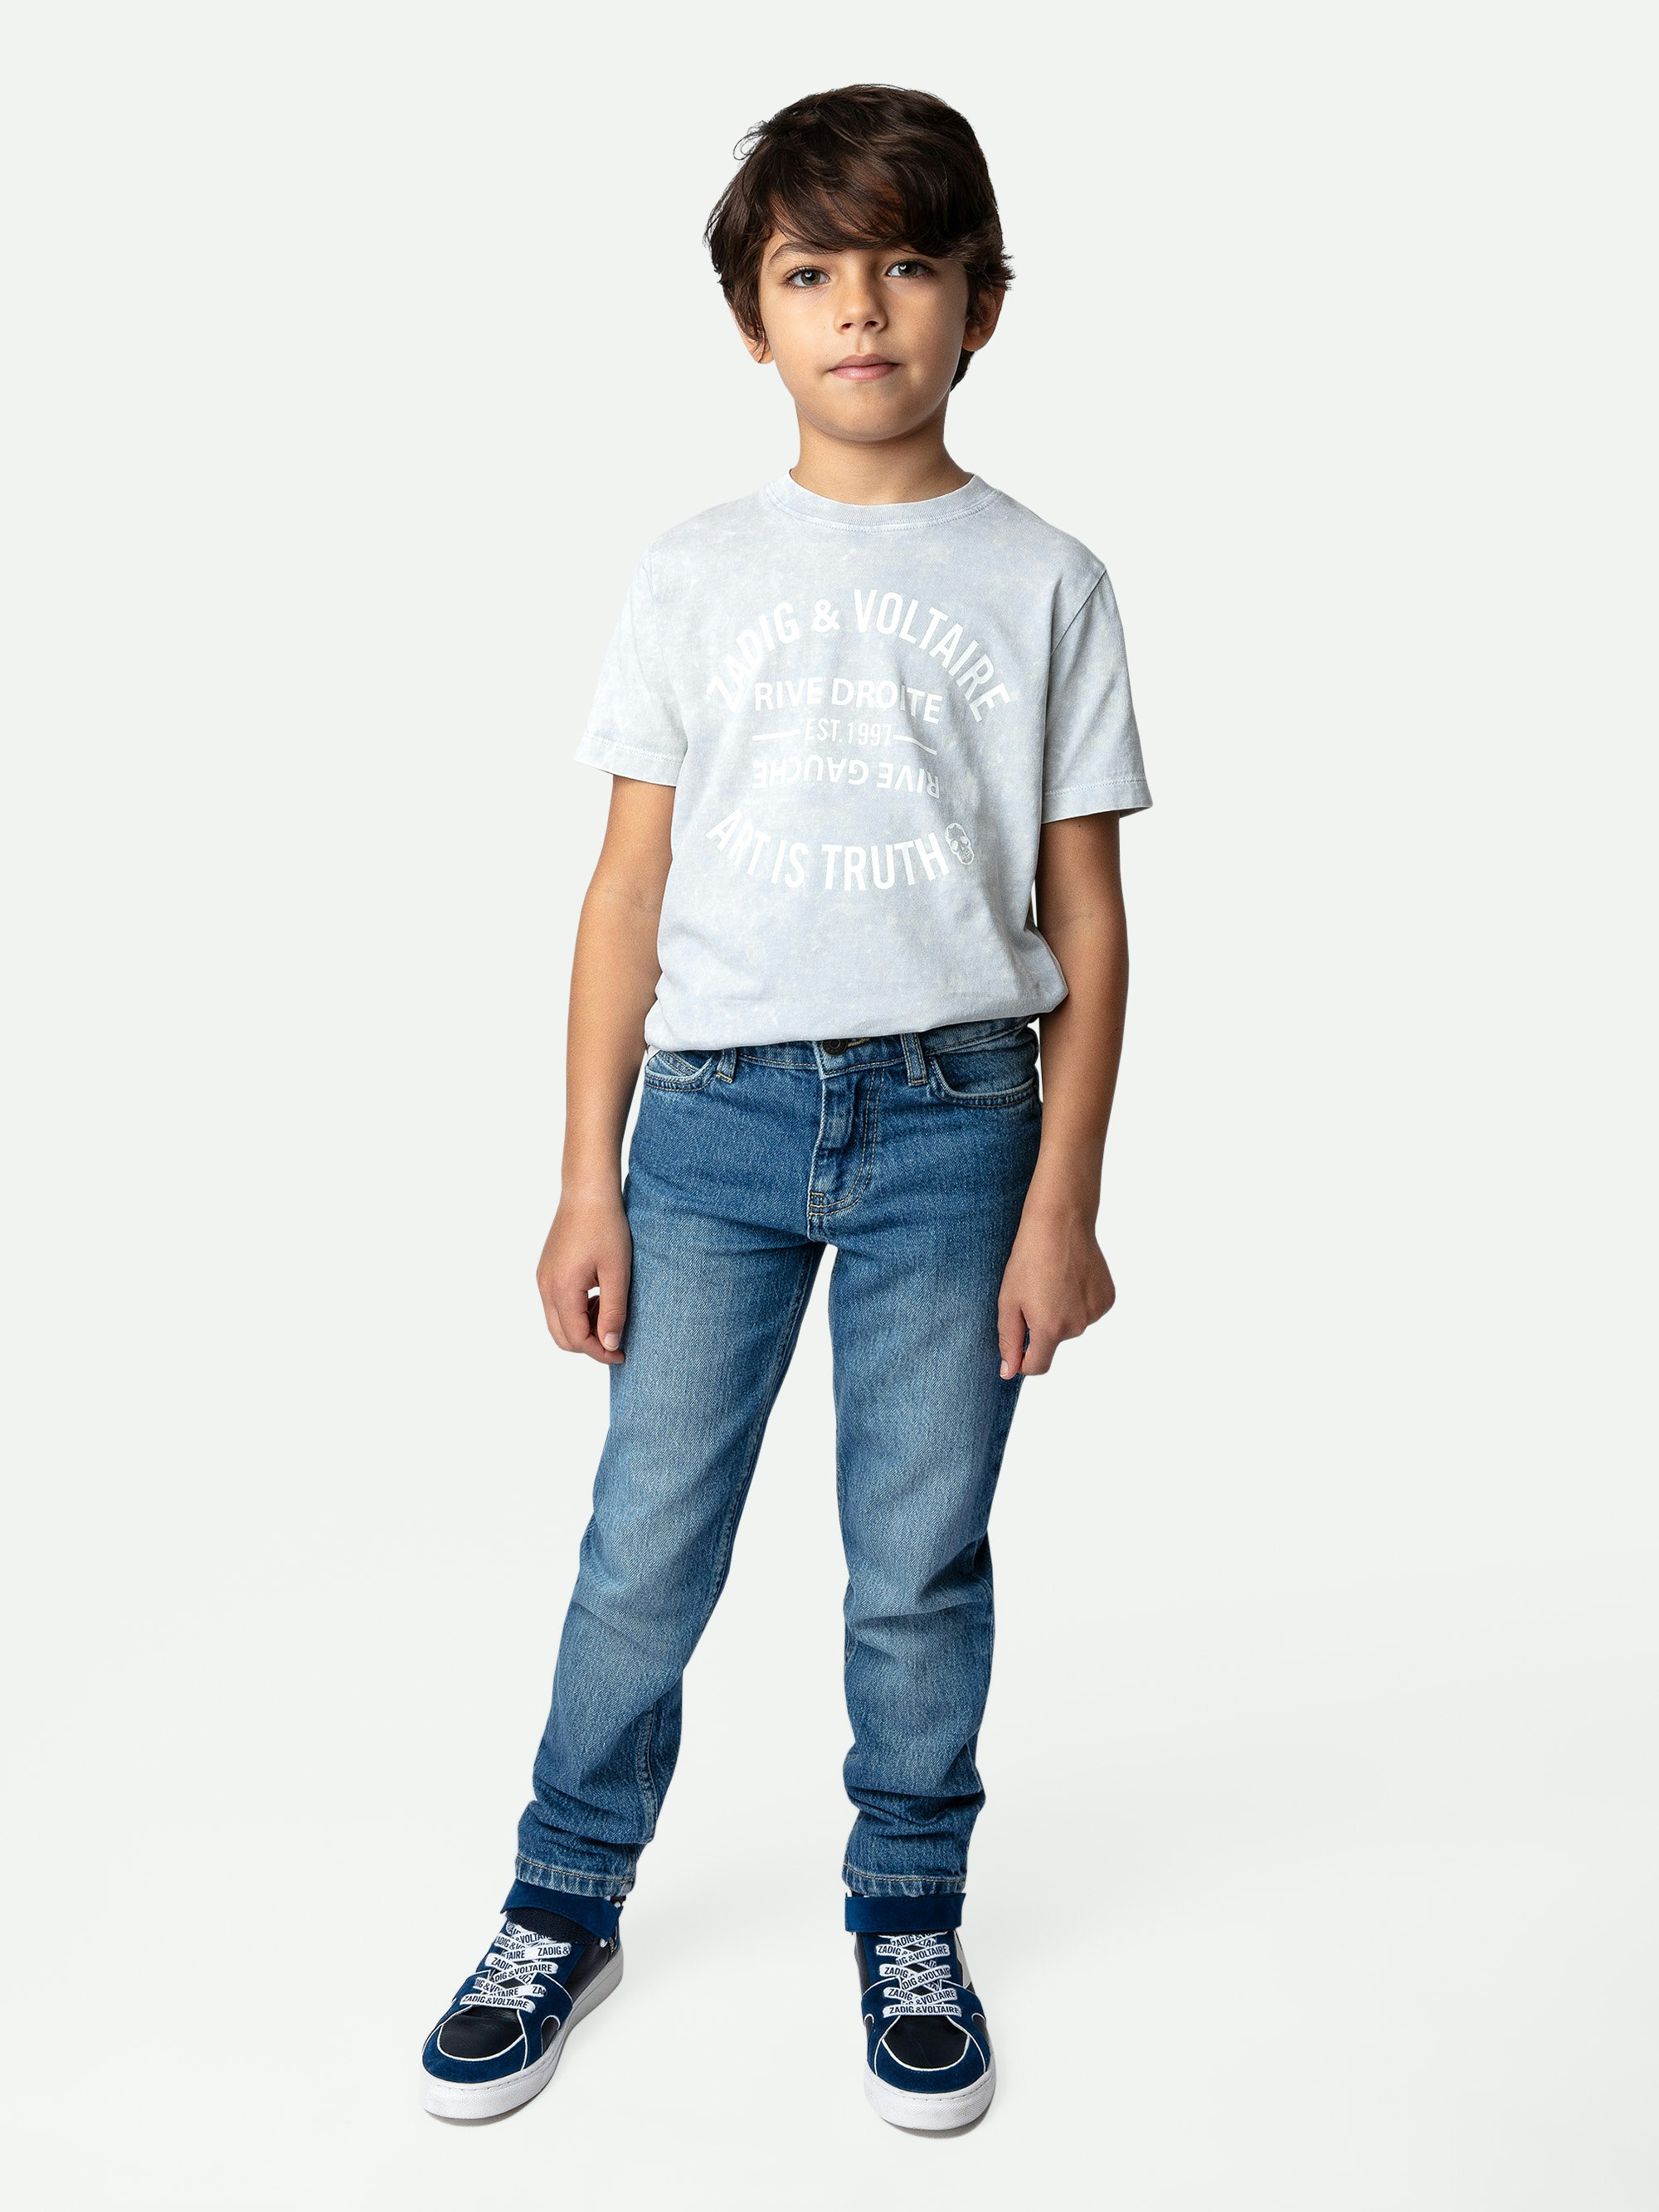 T-Shirt Kita für Jungen - Jungen-T-Shirt mit kurzen Ärmeln aus Baumwolljersey in Schneegrau mit Wappen-Label.